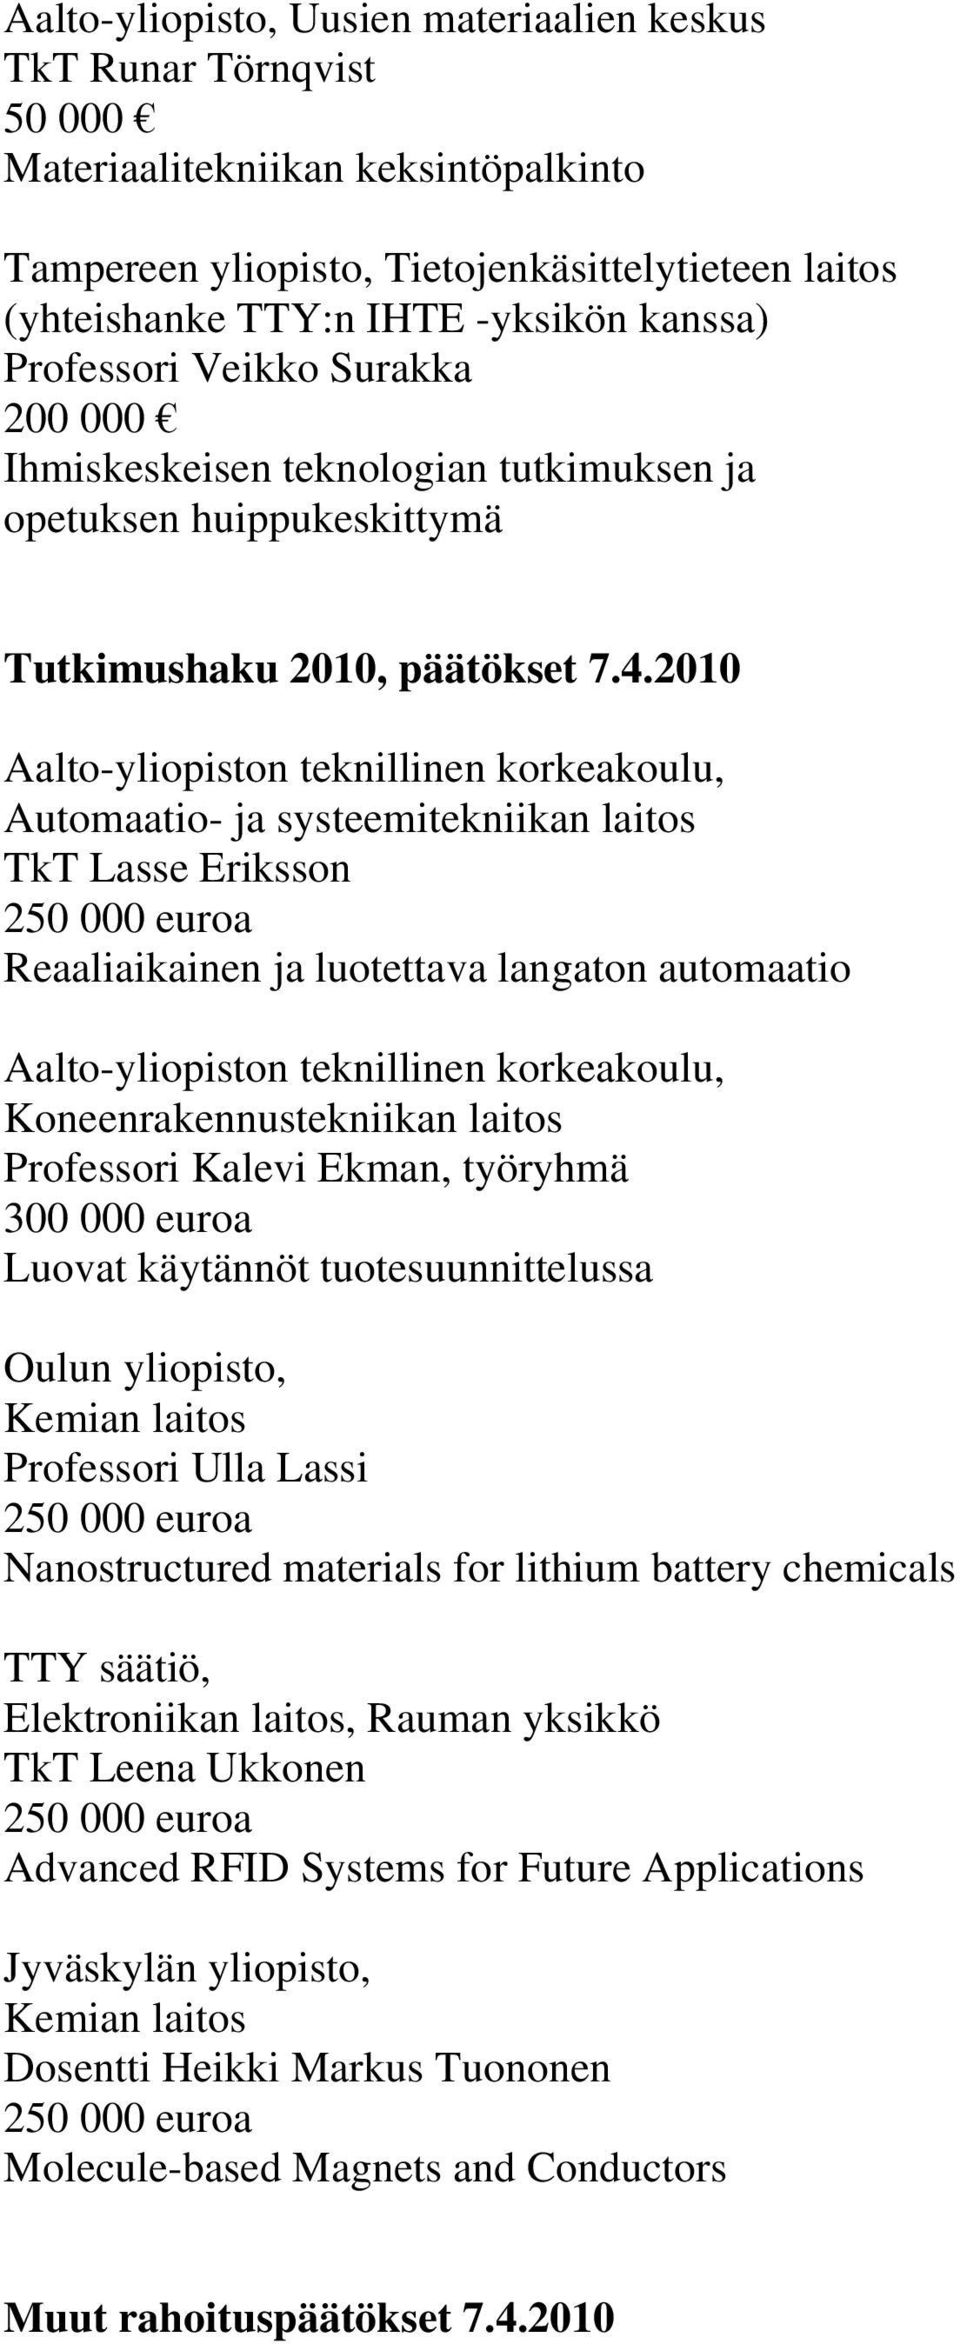 2010 Aalto-yliopiston teknillinen korkeakoulu, Automaatio- ja systeemitekniikan laitos TkT Lasse Eriksson Reaaliaikainen ja luotettava langaton automaatio Aalto-yliopiston teknillinen korkeakoulu,